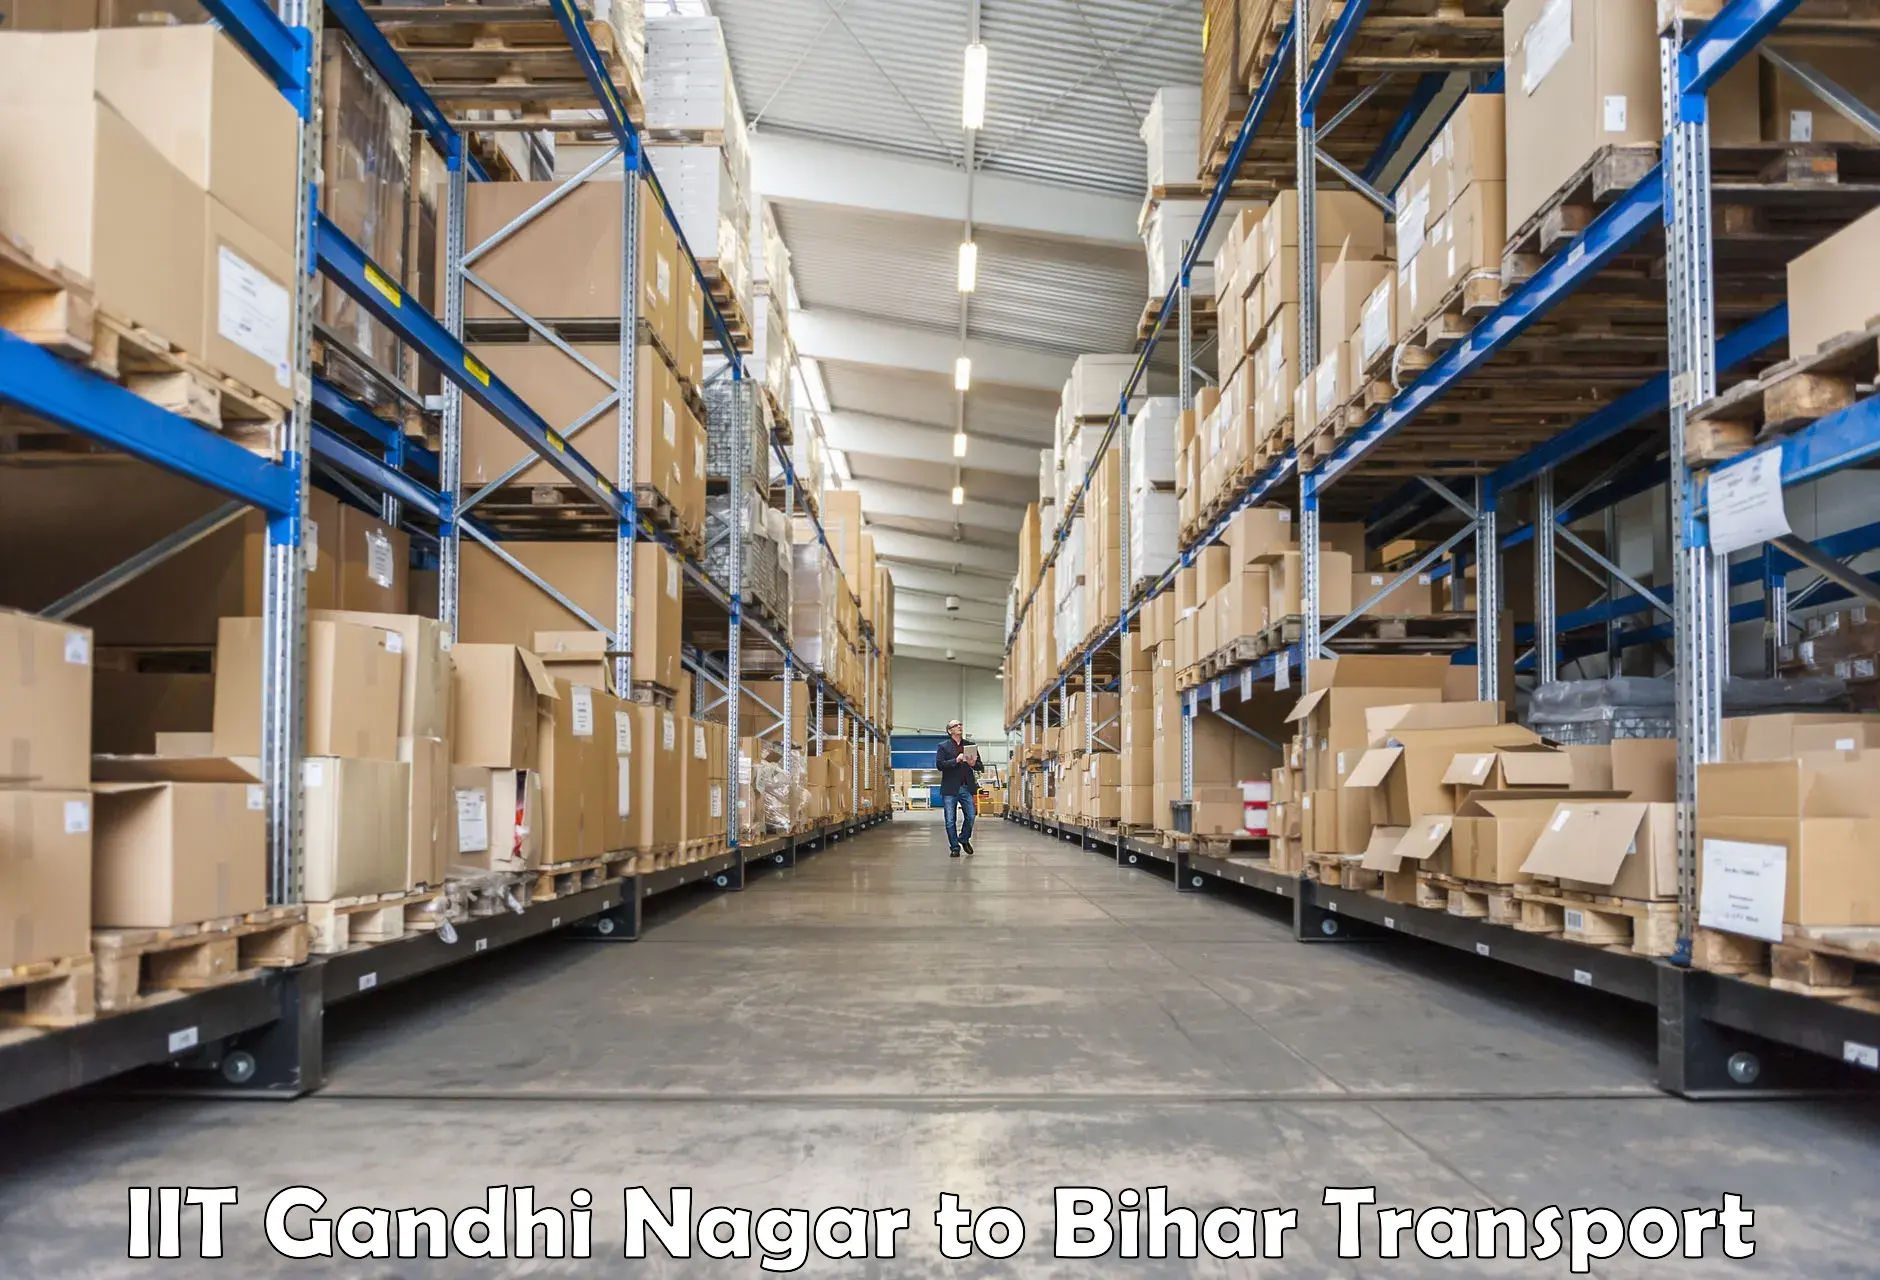 Daily parcel service transport IIT Gandhi Nagar to Kudra